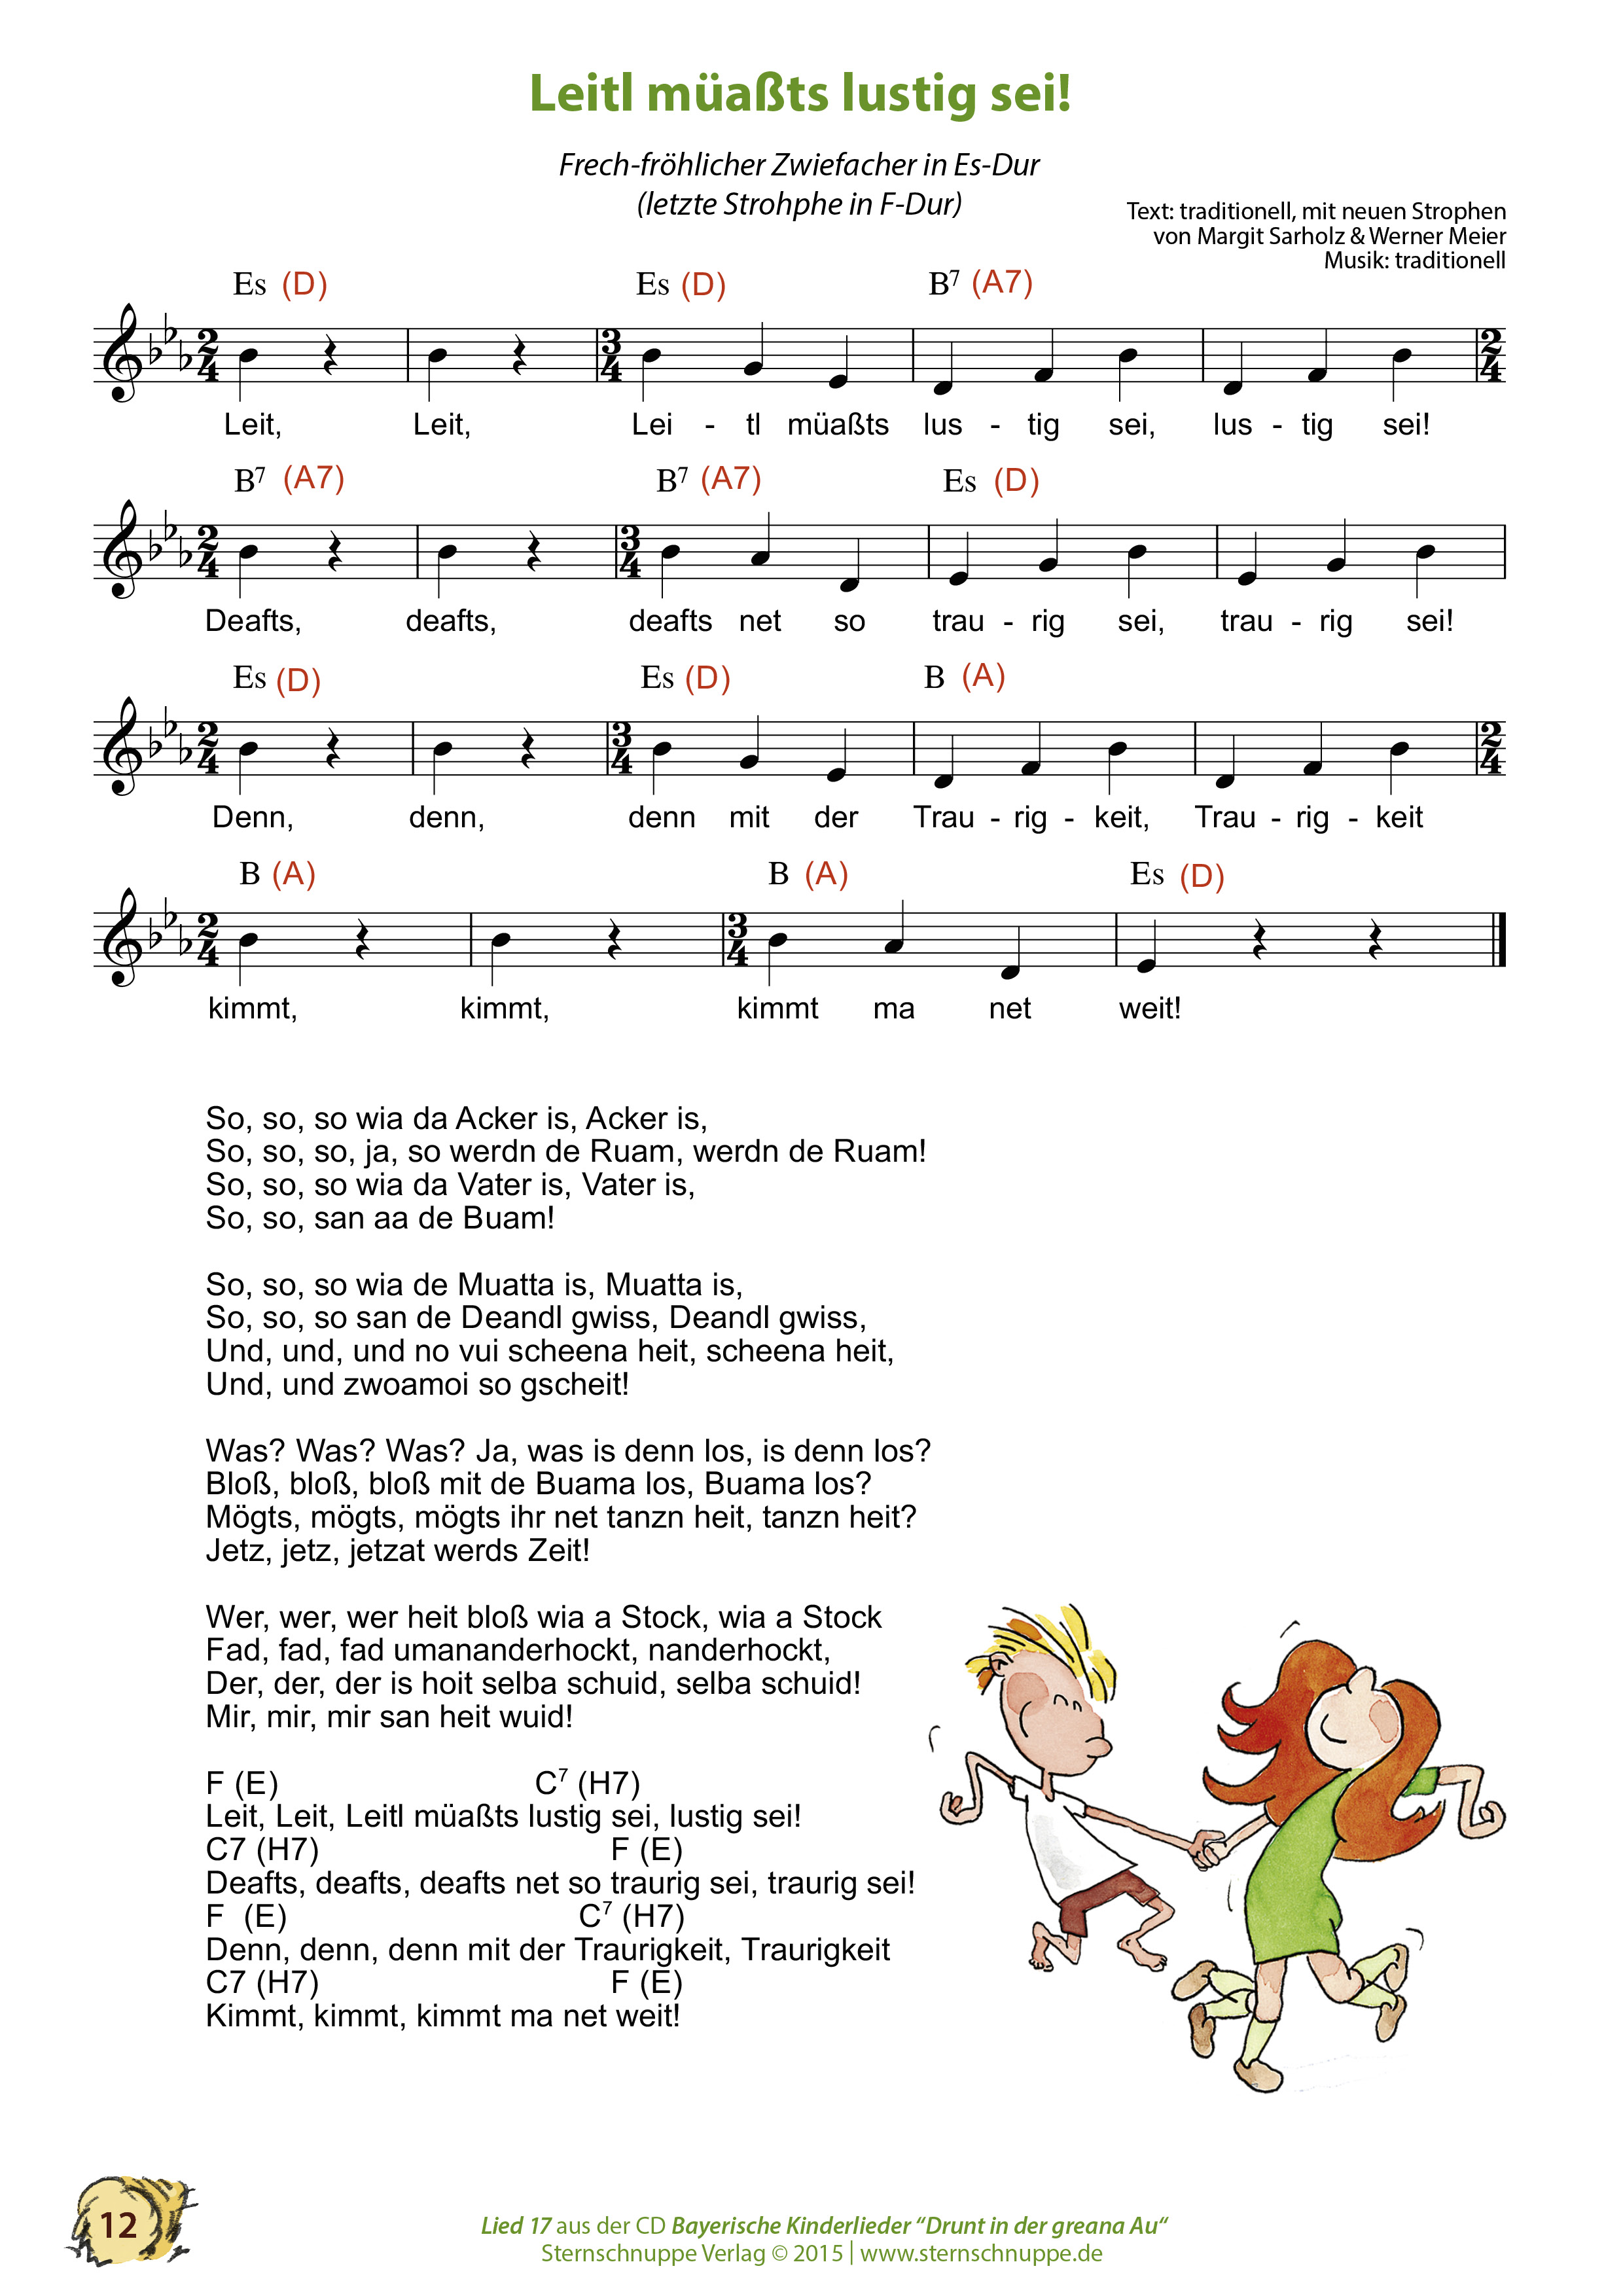 Liedtext, Akkorde und Noten vom Kinderlied Leitl müaßts lustig sei!